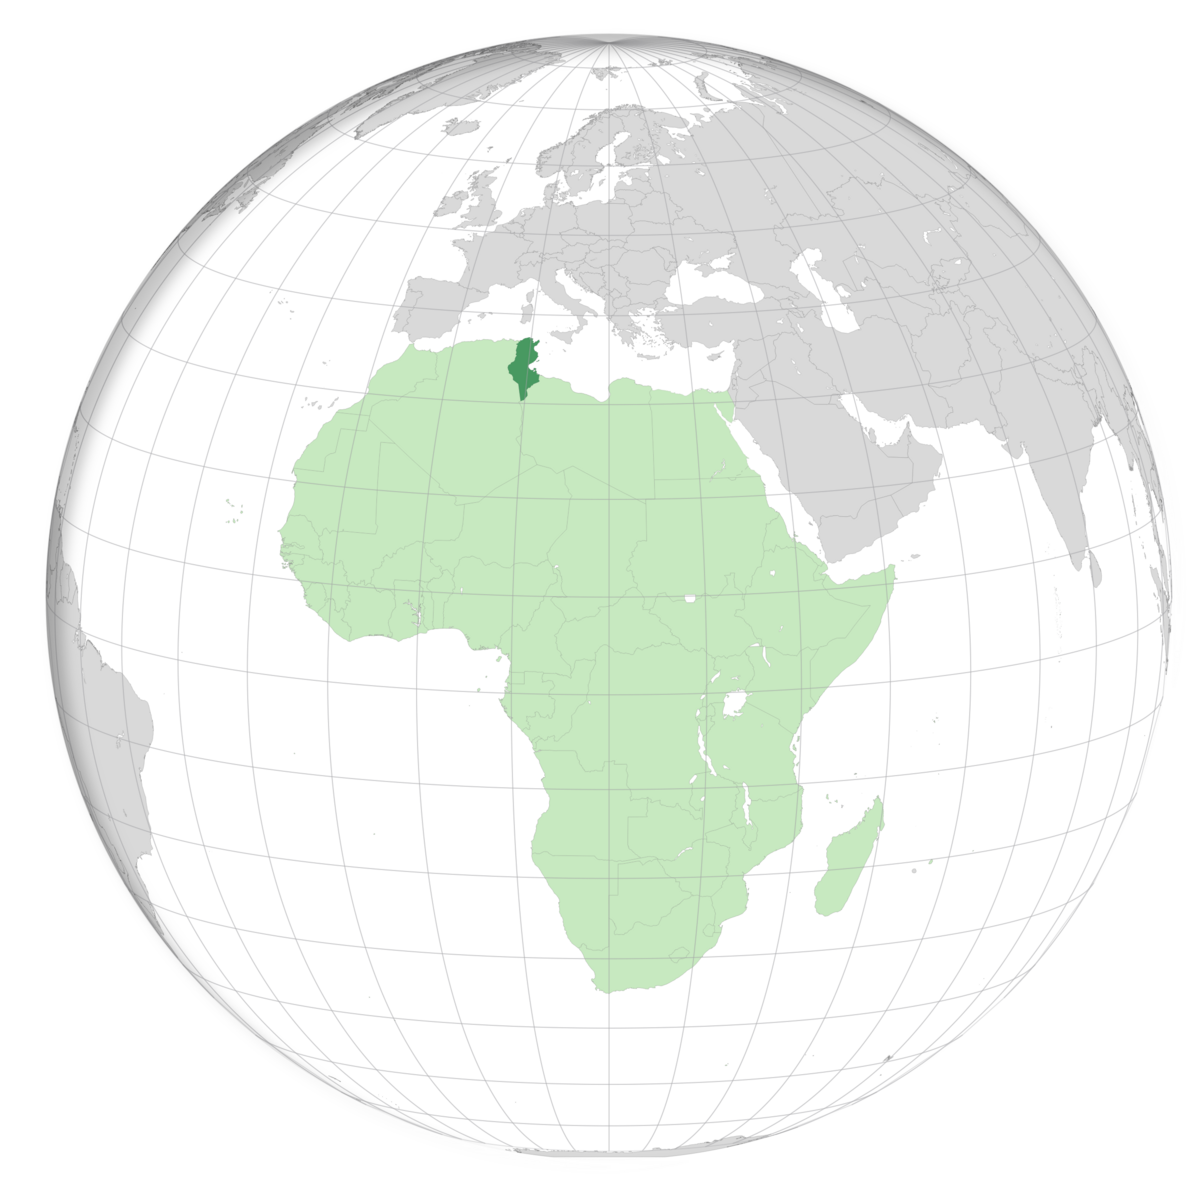 plassering av Tunisia på jordkloden. Kart